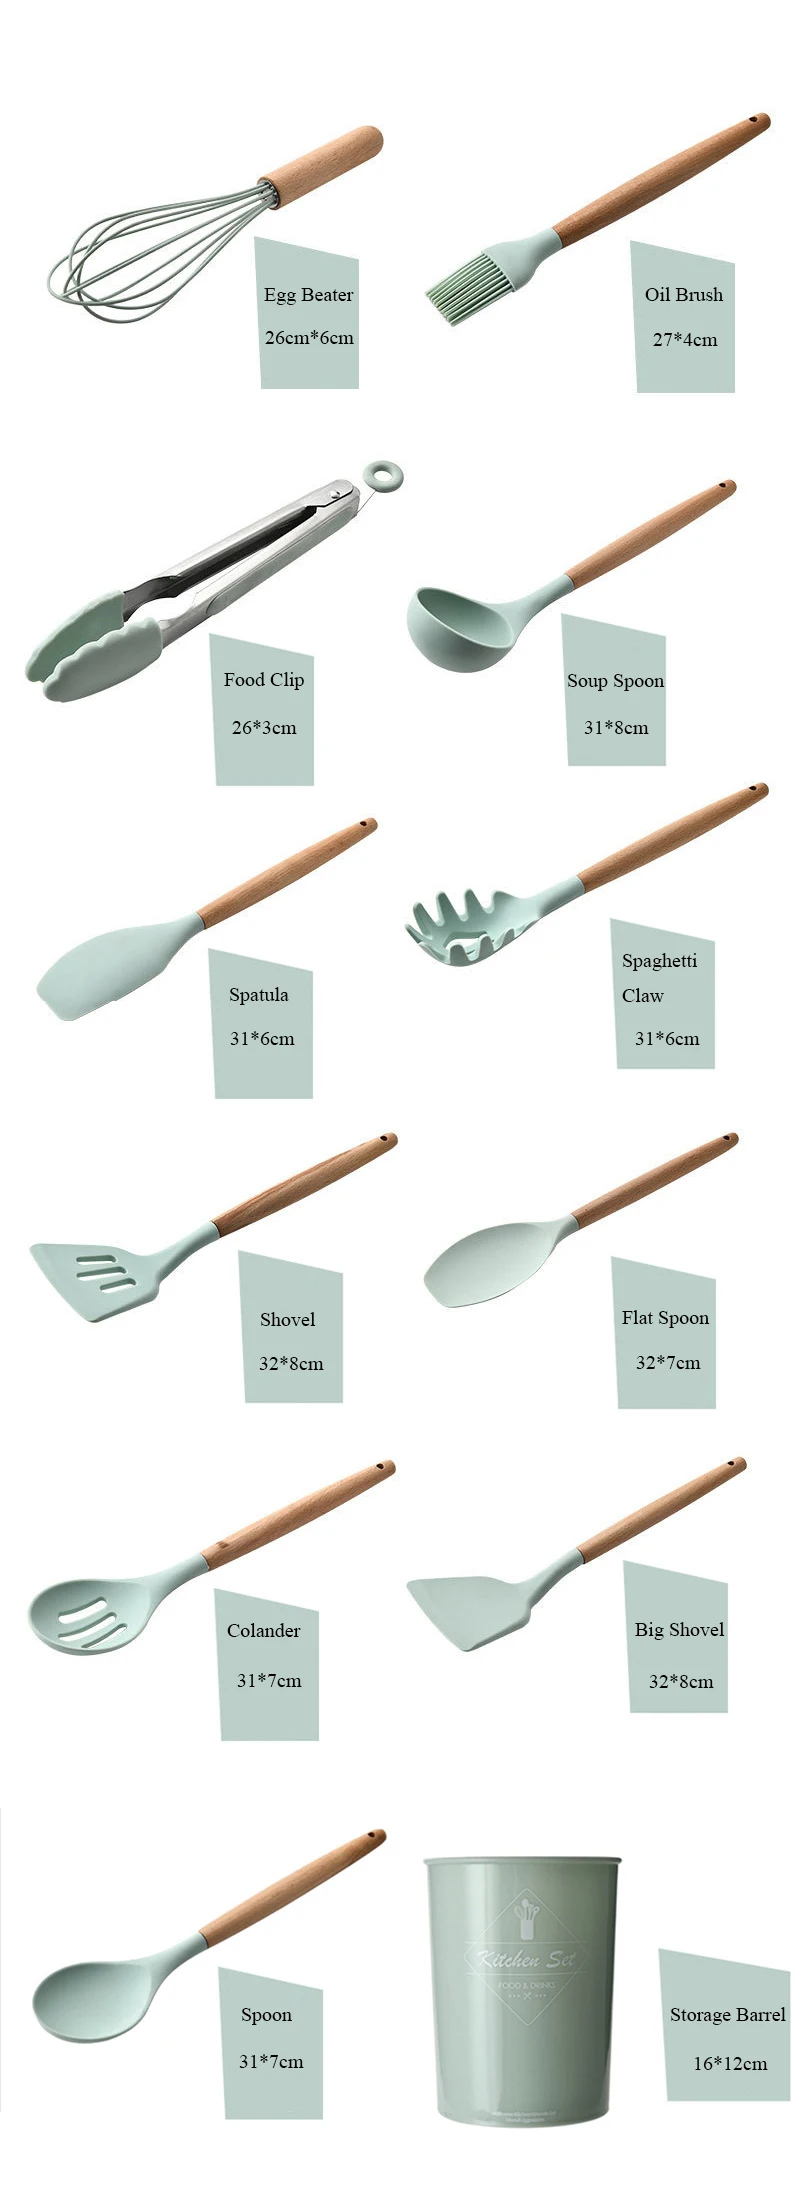 Набор кухонной посуды Unibird, силиконовая посуда с антипригарным покрытием, инструмент для приготовления пищи, лопатка, половник, венчики для яиц, лопатка, ложка, кухонные инструменты